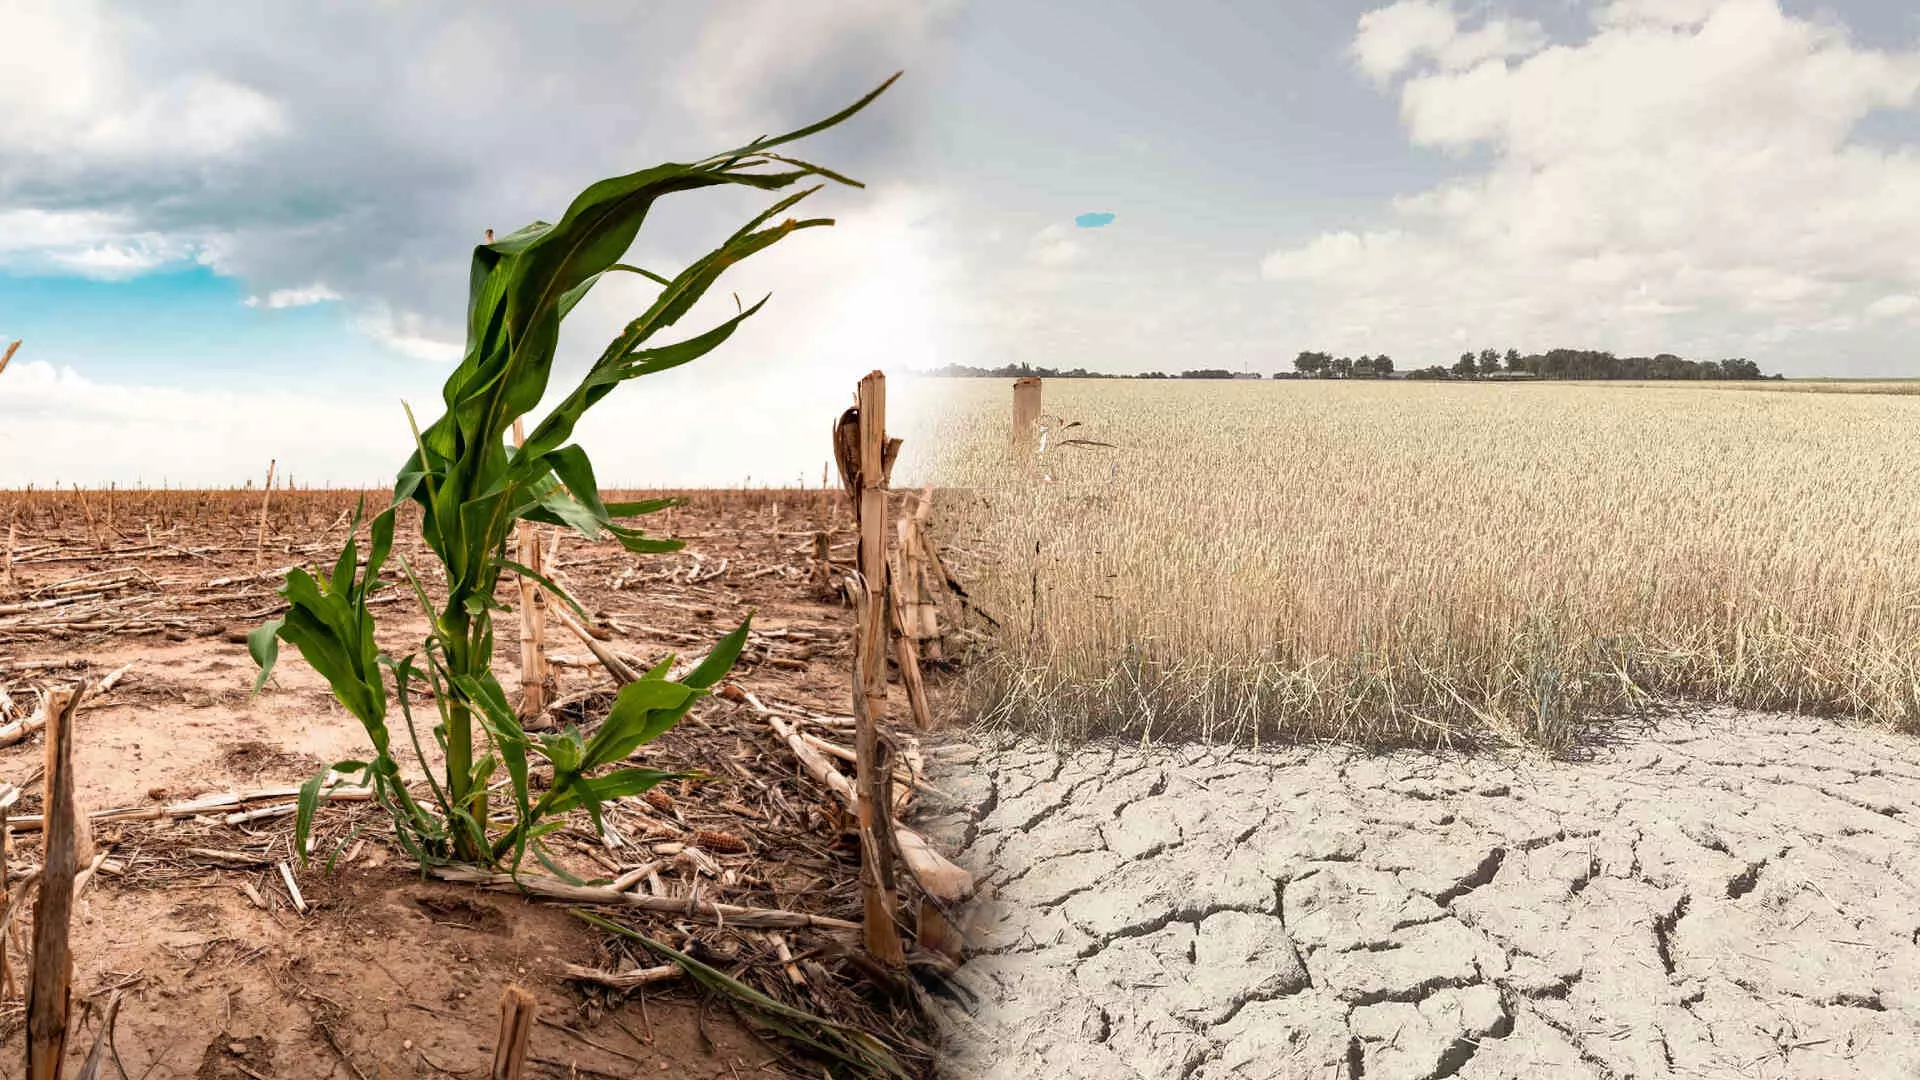 हवामान बदलाचा थेट शेतकऱ्यांना फटका, शेतीच्या पध्दतीत करावा लागणार बदल- डॉ. प्रियदर्शिनी कर्वे